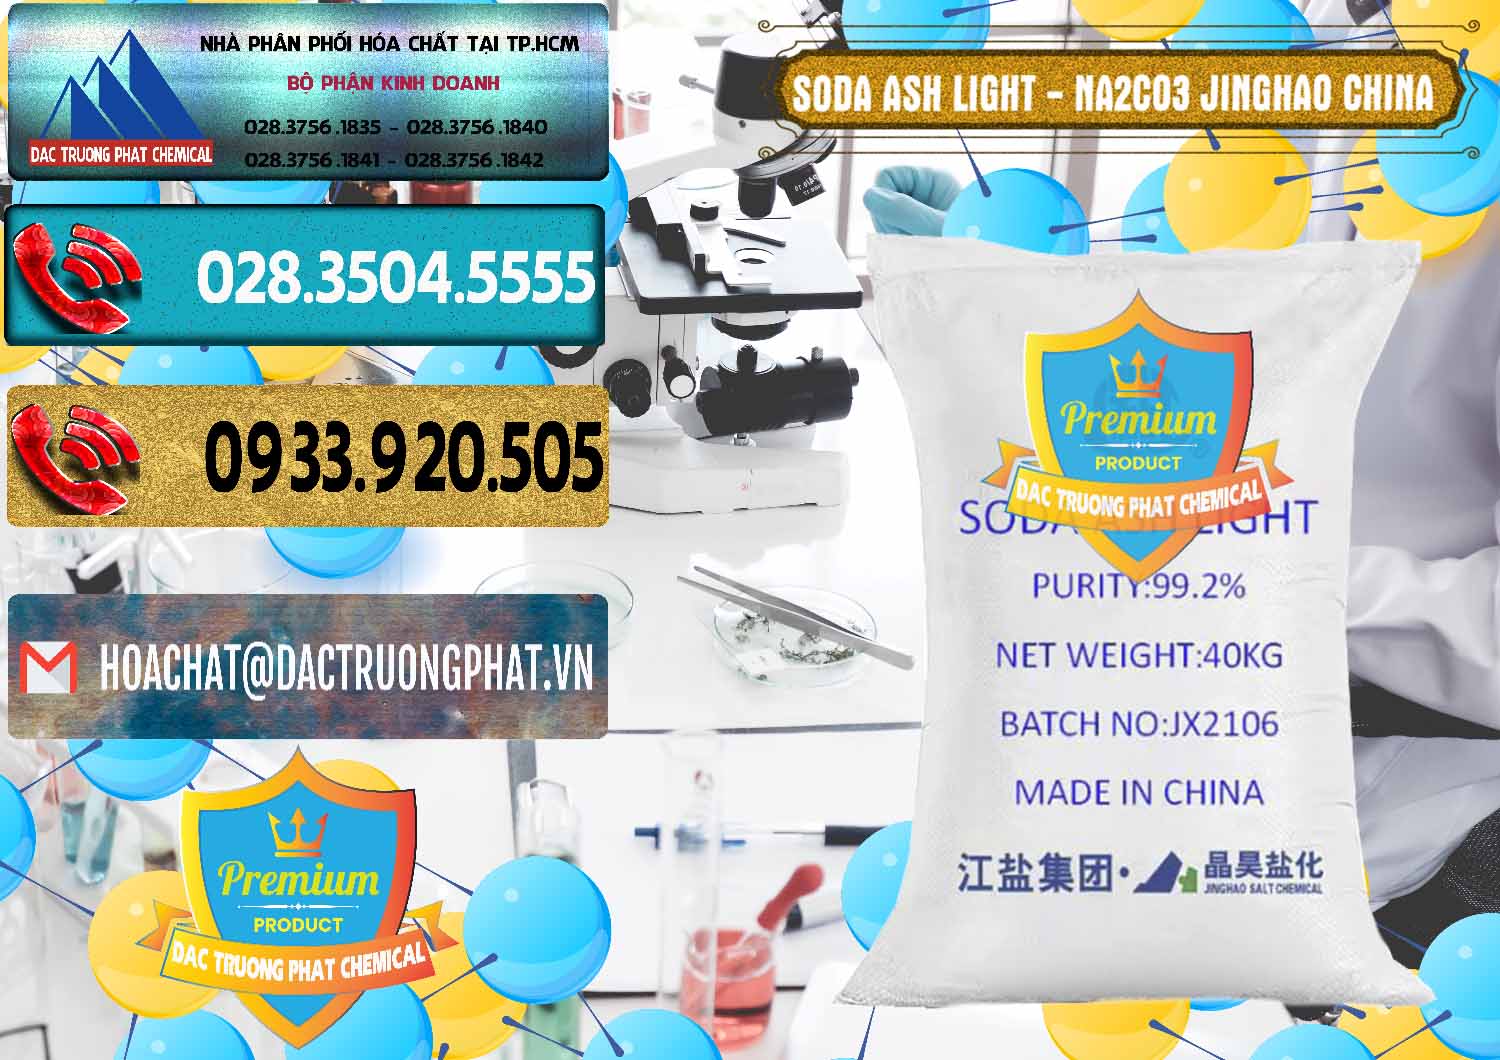 Nơi cung cấp và bán Soda Ash Light - NA2CO3 Jinghao Trung Quốc China - 0339 - Nhà phân phối & cung cấp hóa chất tại TP.HCM - hoachatdetnhuom.com